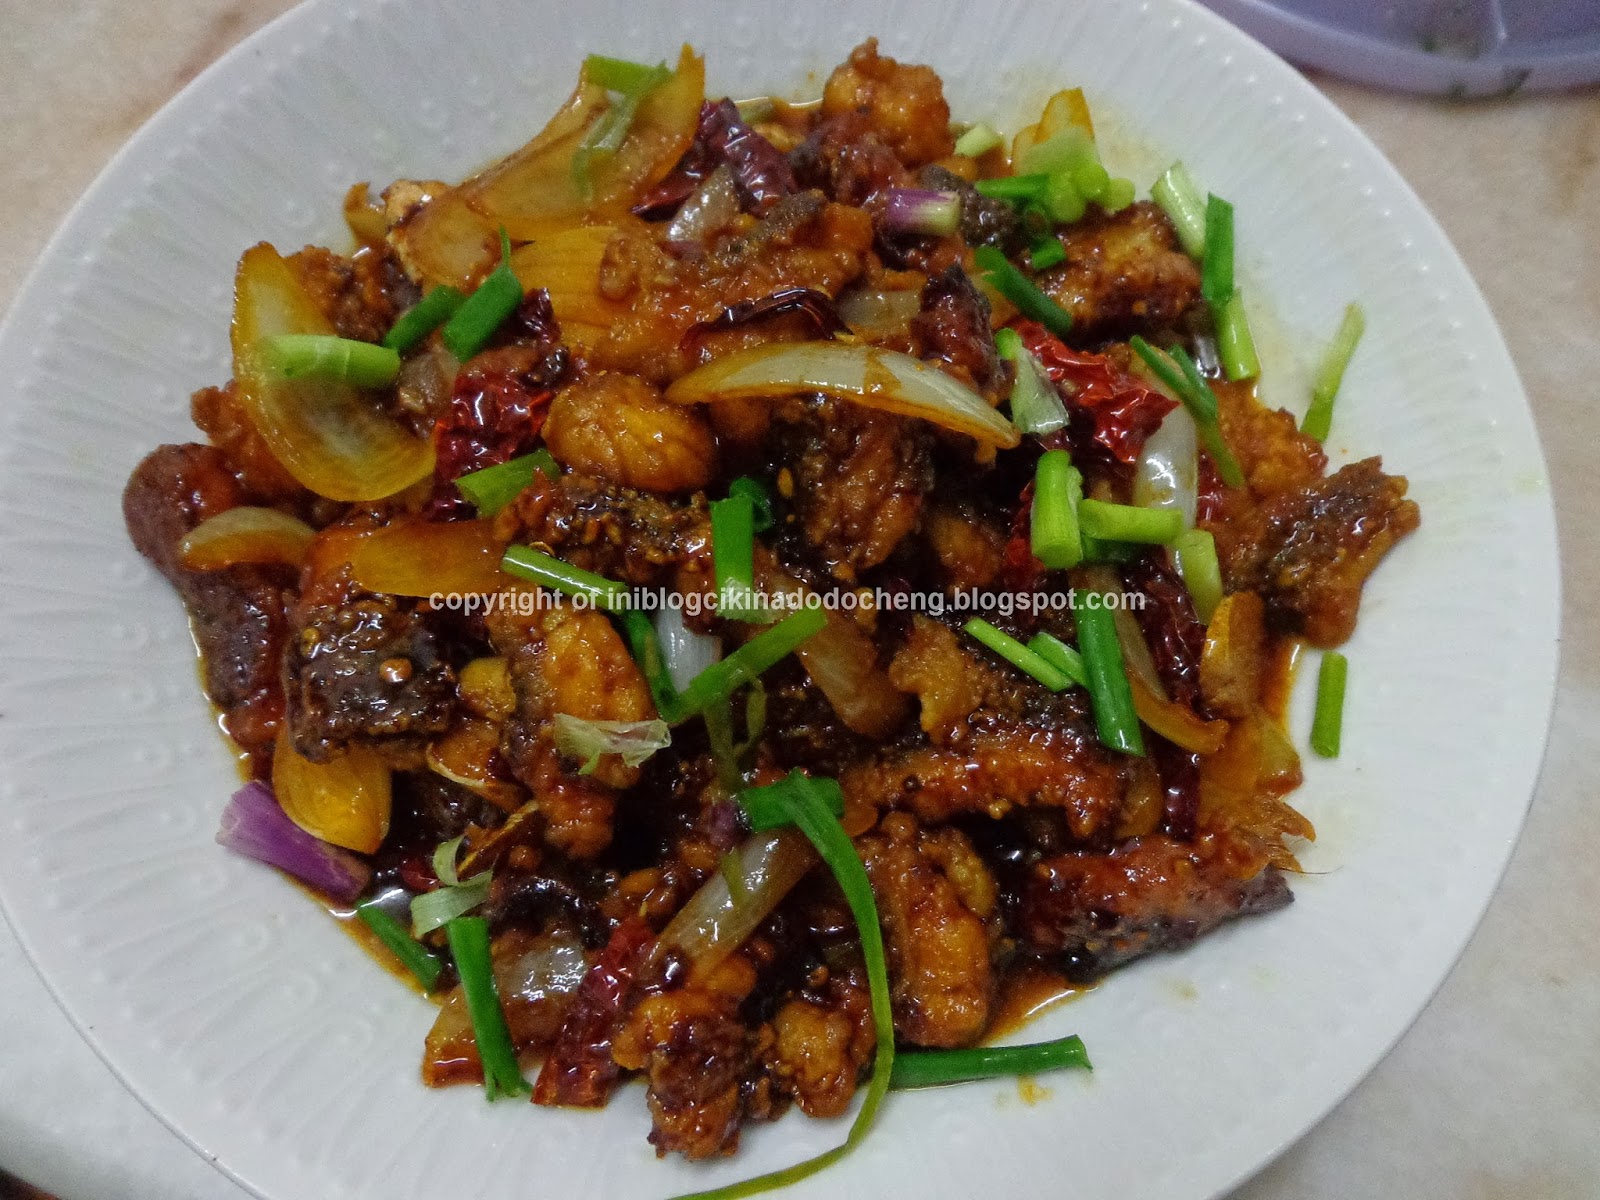 Blog Cik Ina Do Do Cheng: resepi isi ikan kerapu goreng 